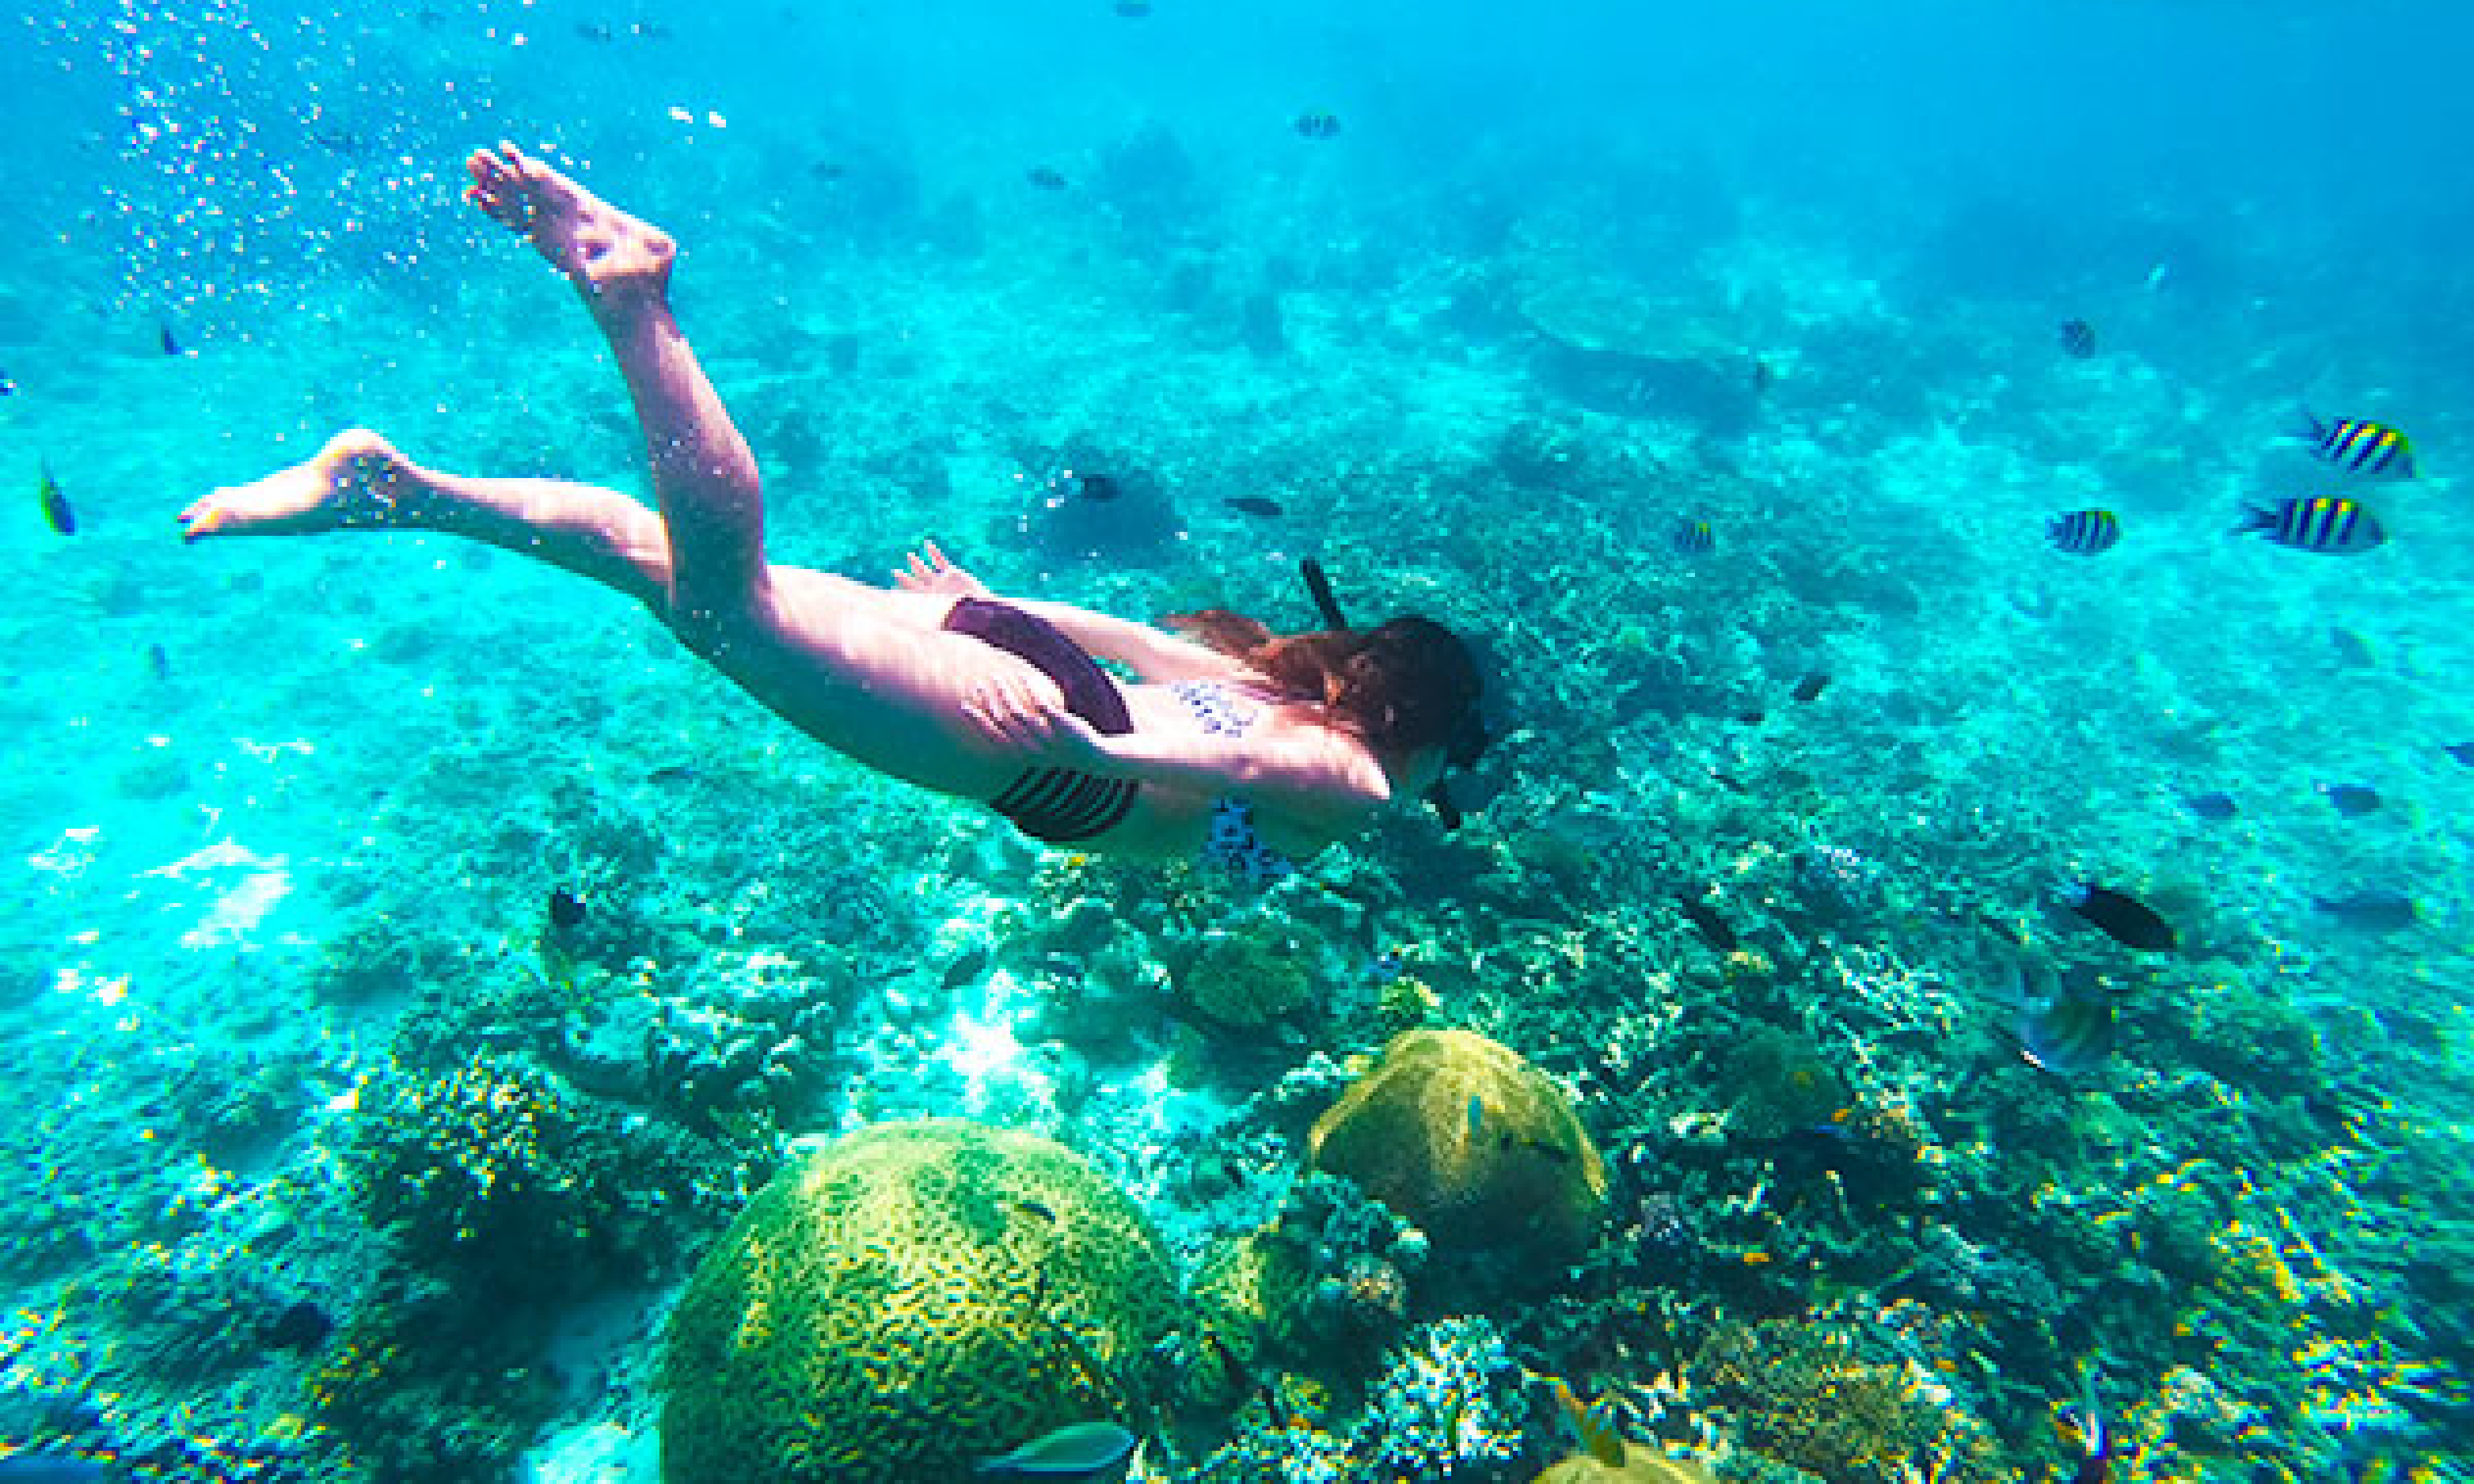 シュノーケリングをしながら、海底を目指一人の女性